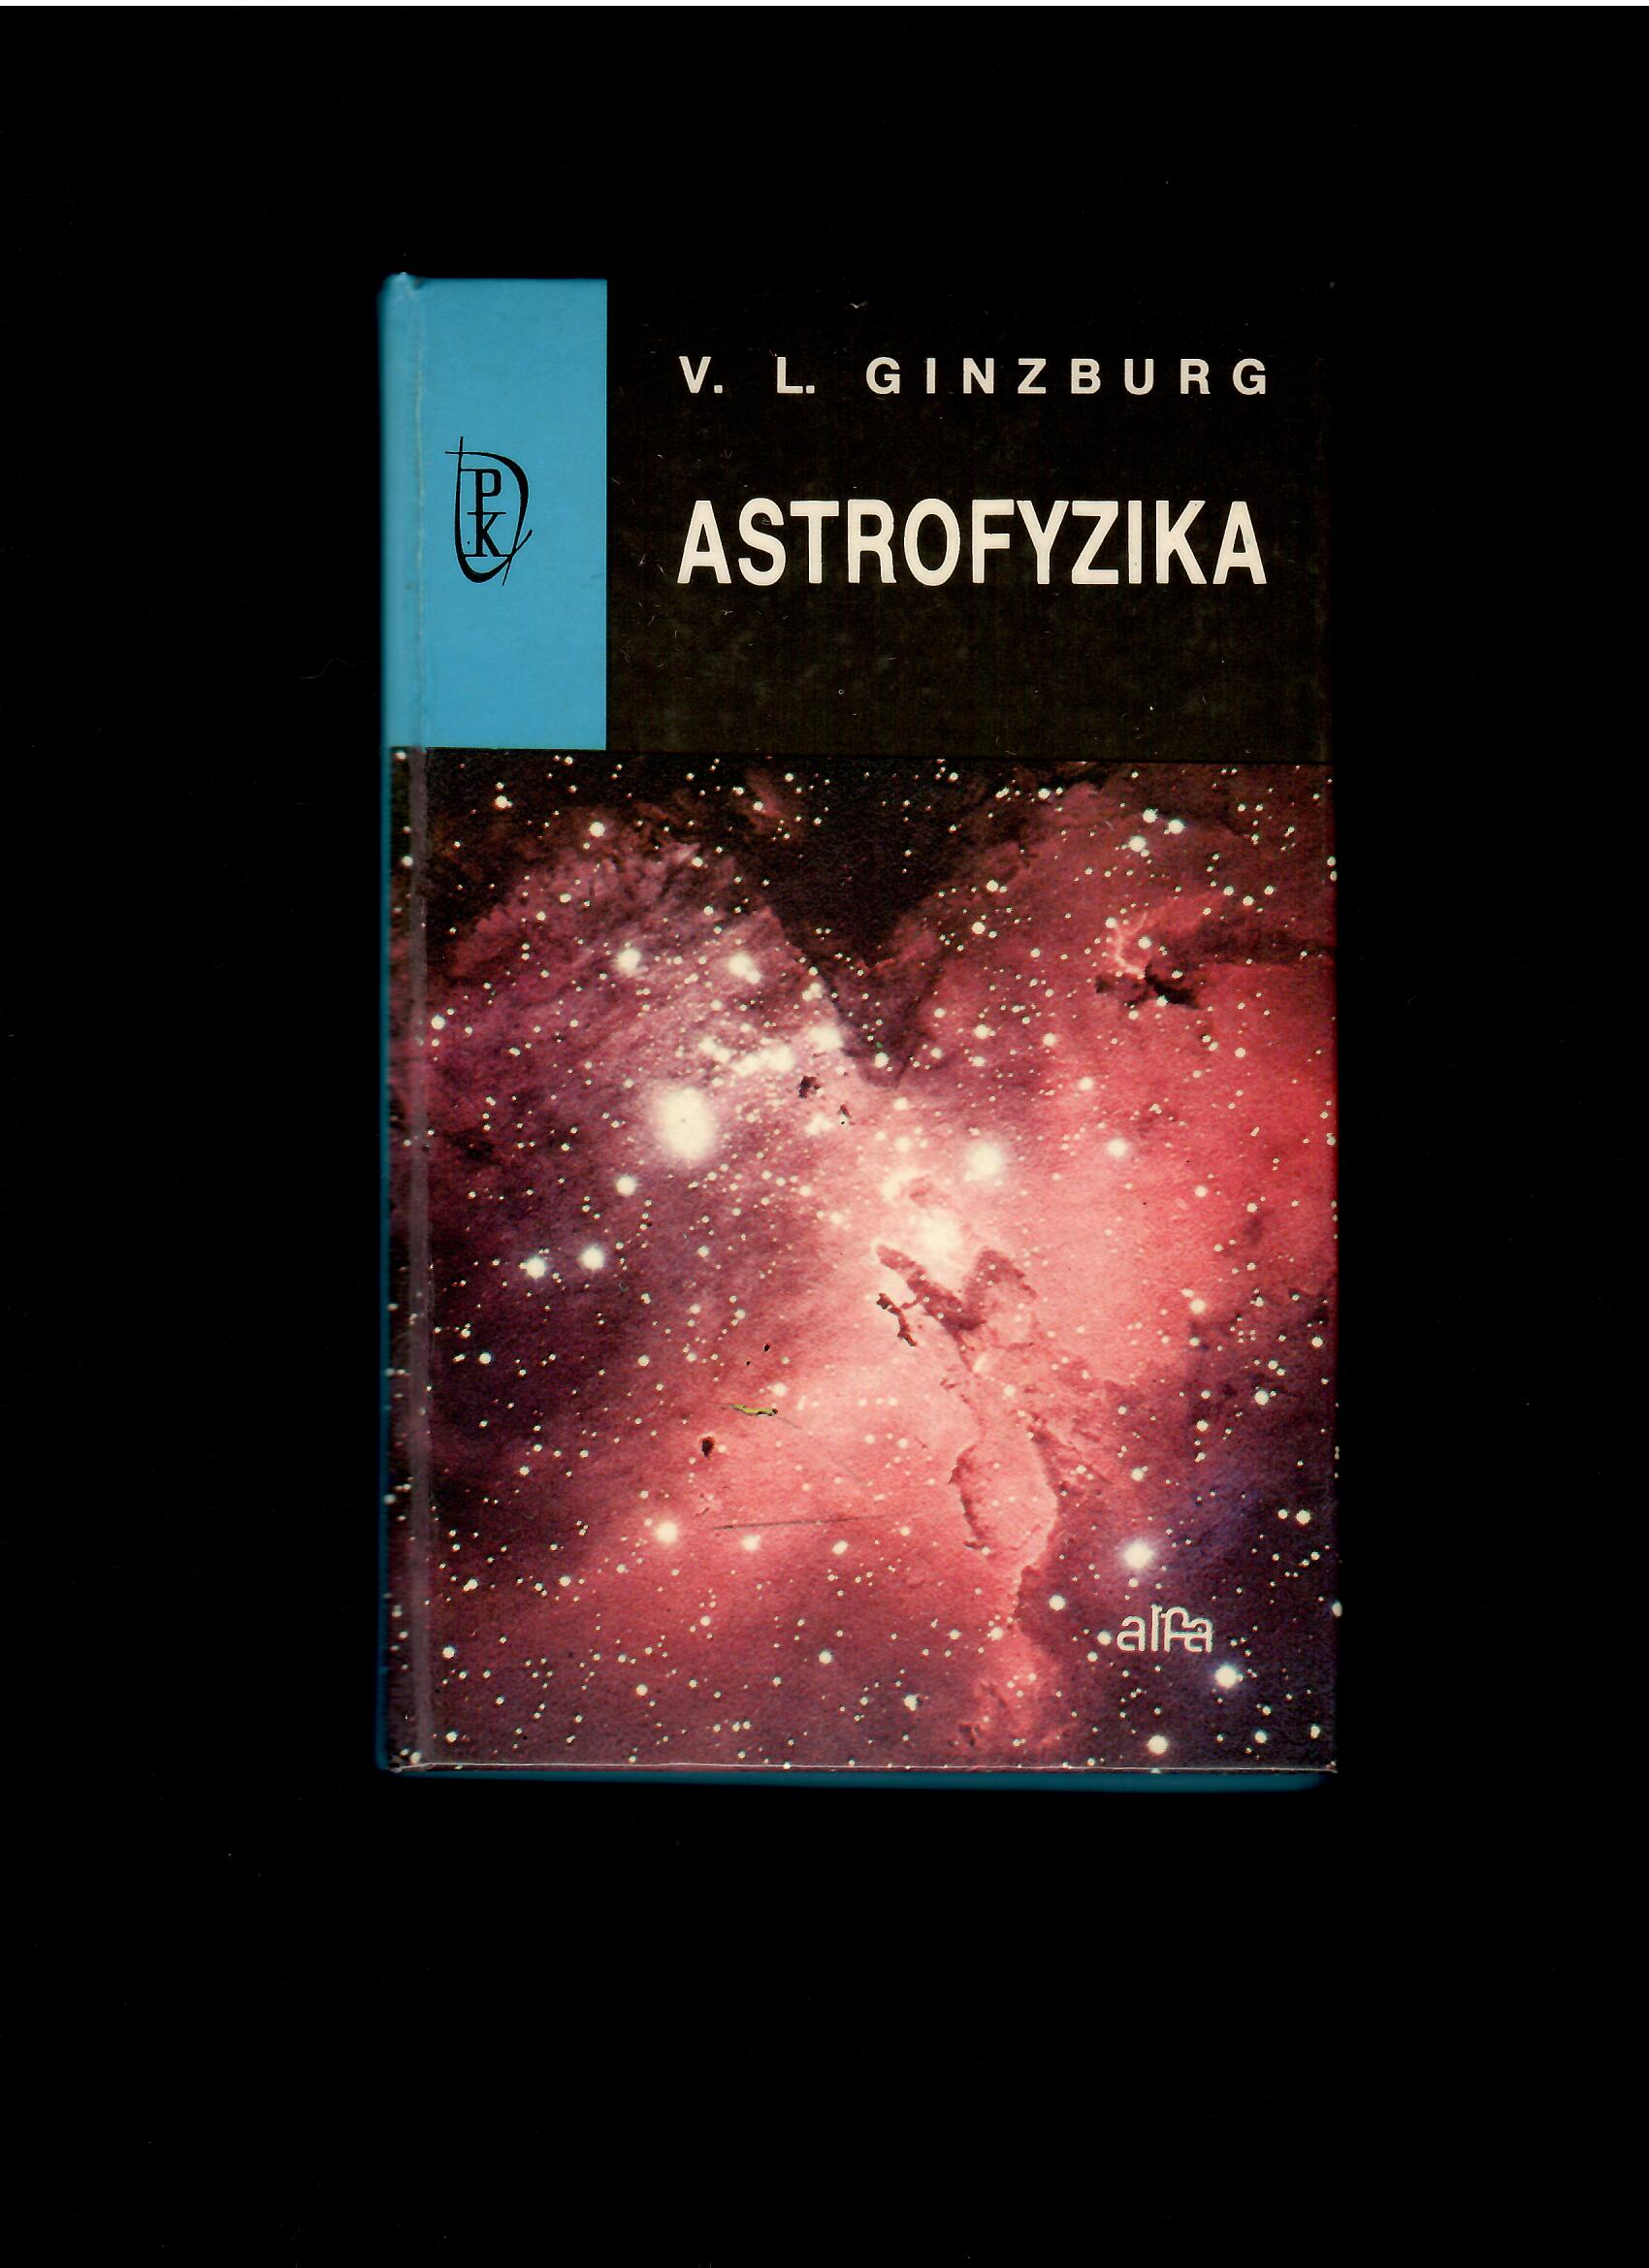 V. L. Ginzburg: Astrofyzika